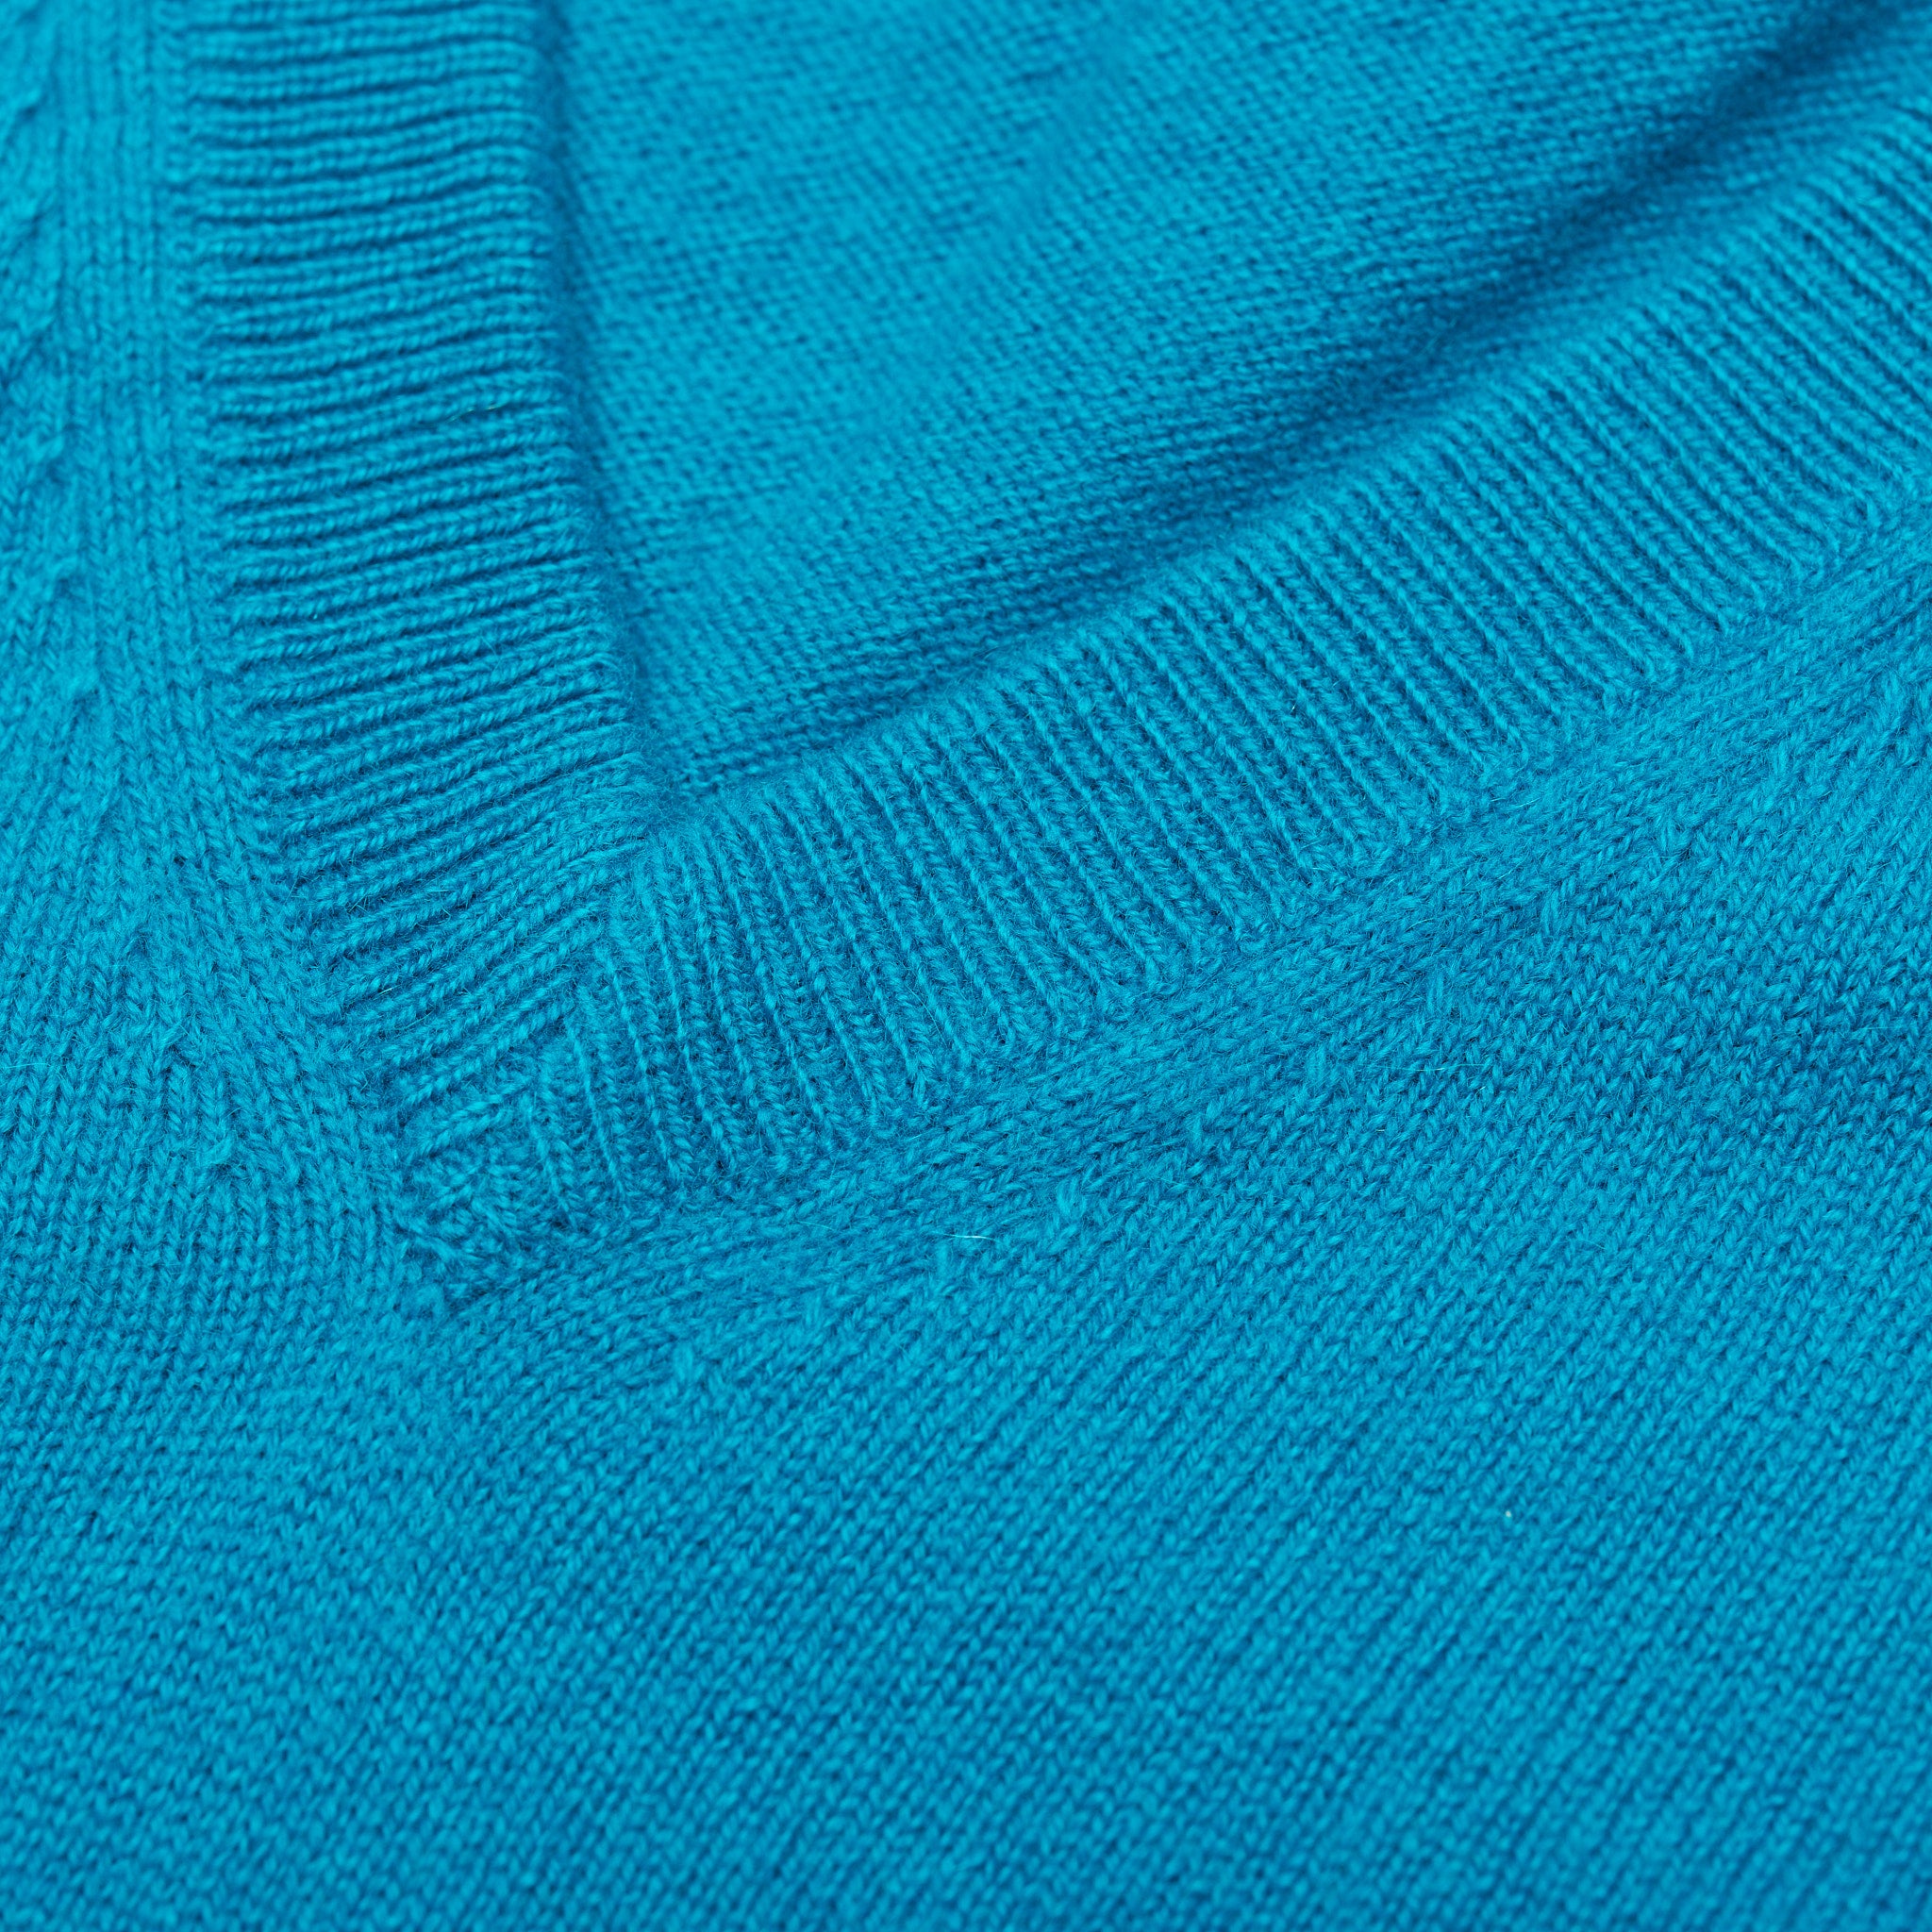 FEDELI Aqua Blue Cashmere V-Neck Sweater NEW